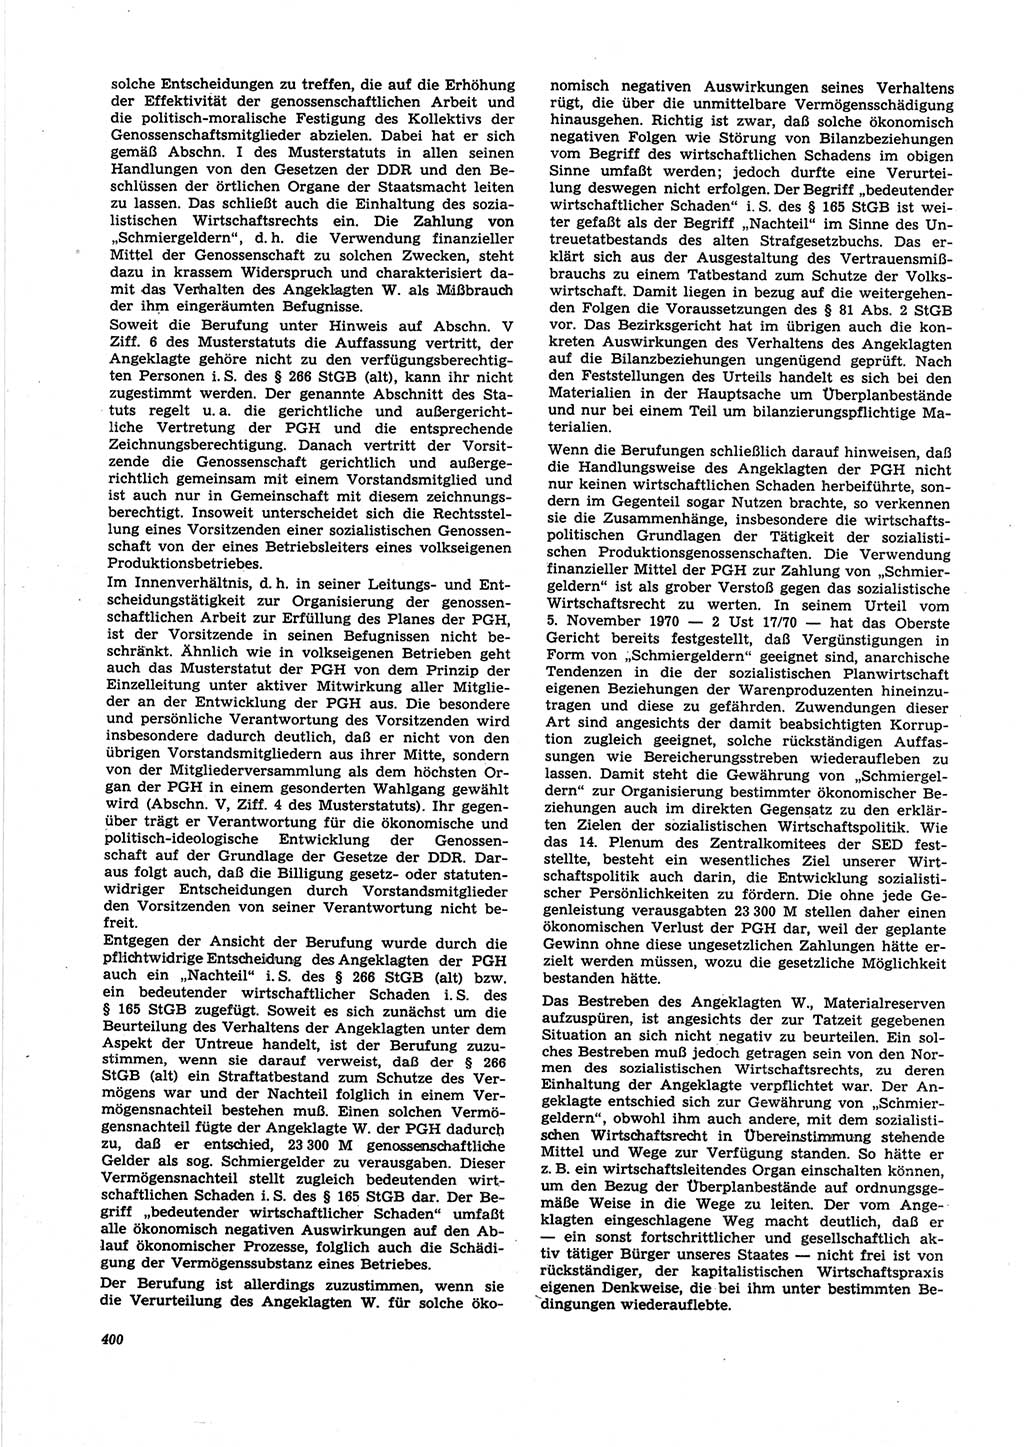 Neue Justiz (NJ), Zeitschrift für Recht und Rechtswissenschaft [Deutsche Demokratische Republik (DDR)], 25. Jahrgang 1971, Seite 400 (NJ DDR 1971, S. 400)